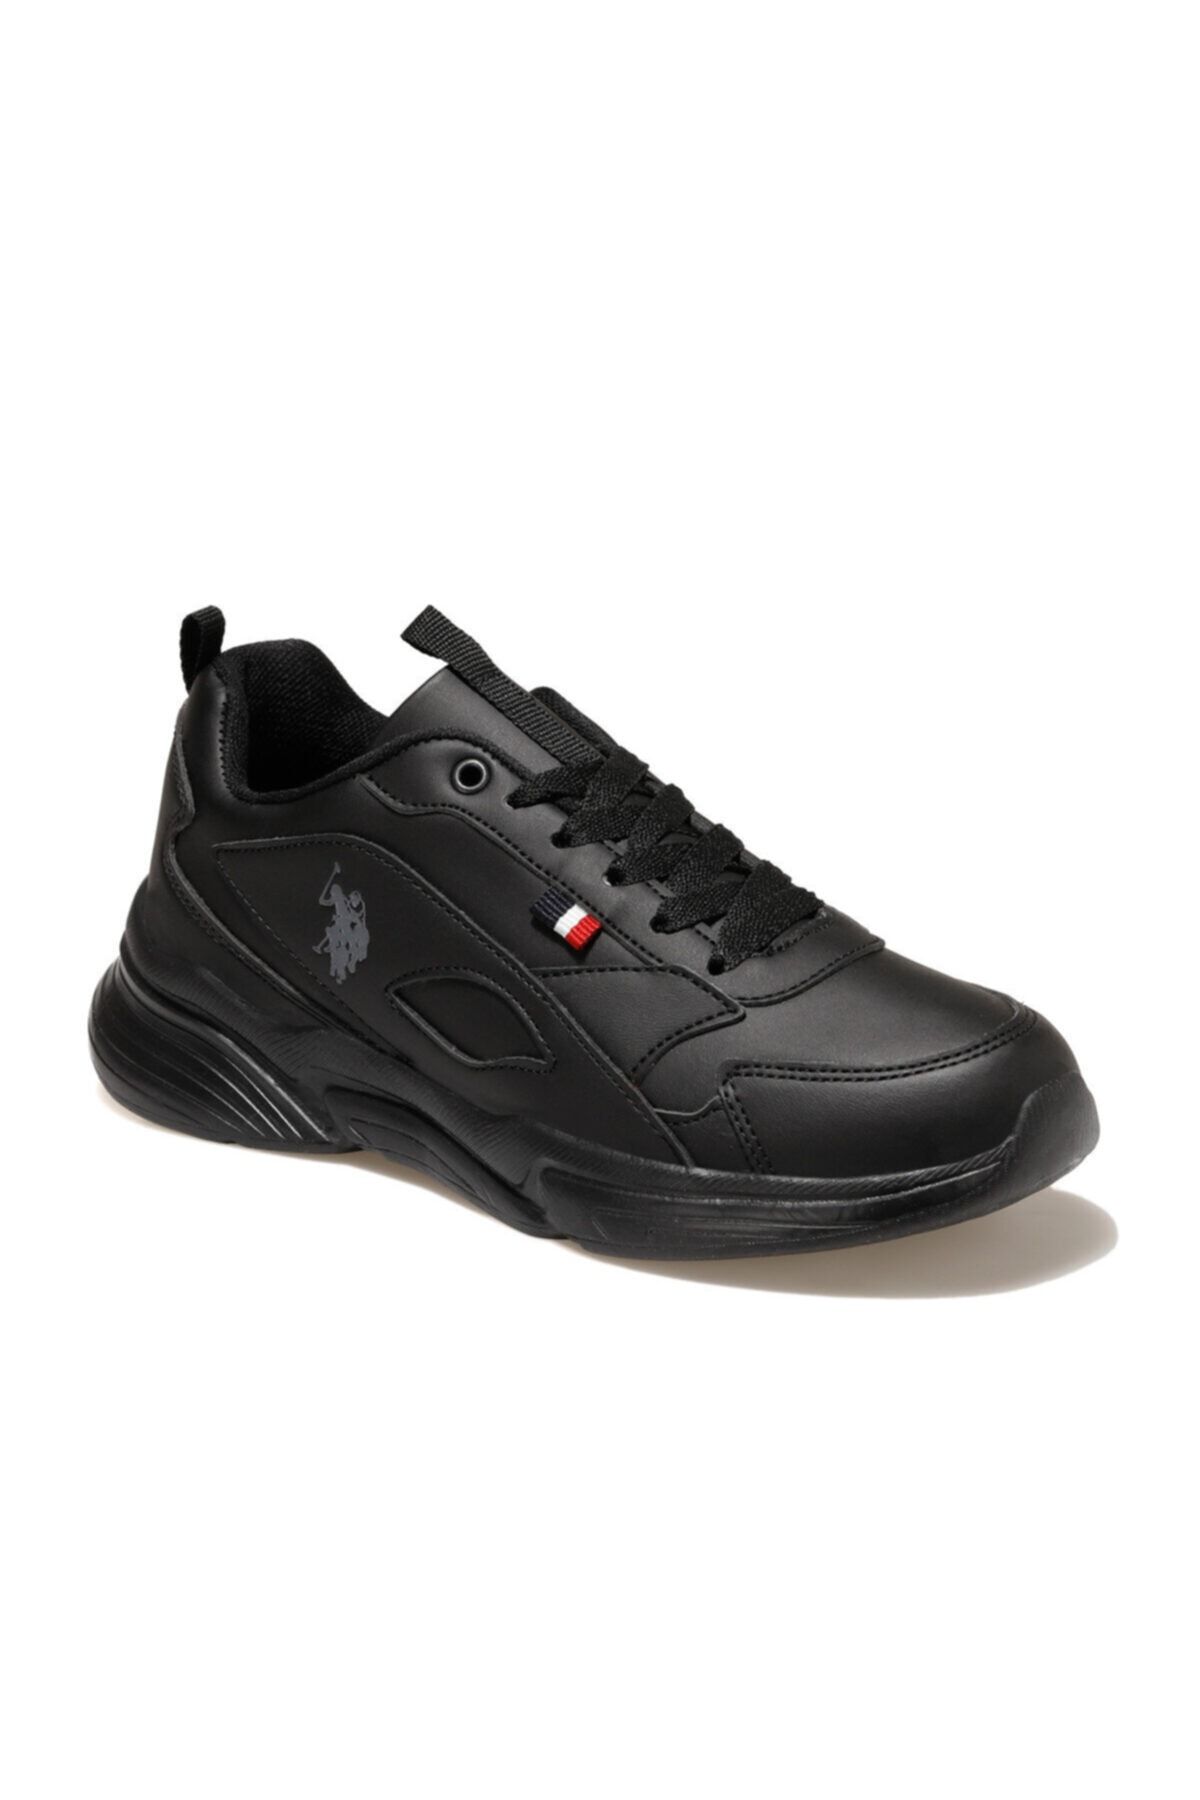 U.S. Polo Assn. LEMON Siyah Kadın Sneaker Ayakkabı 100549061